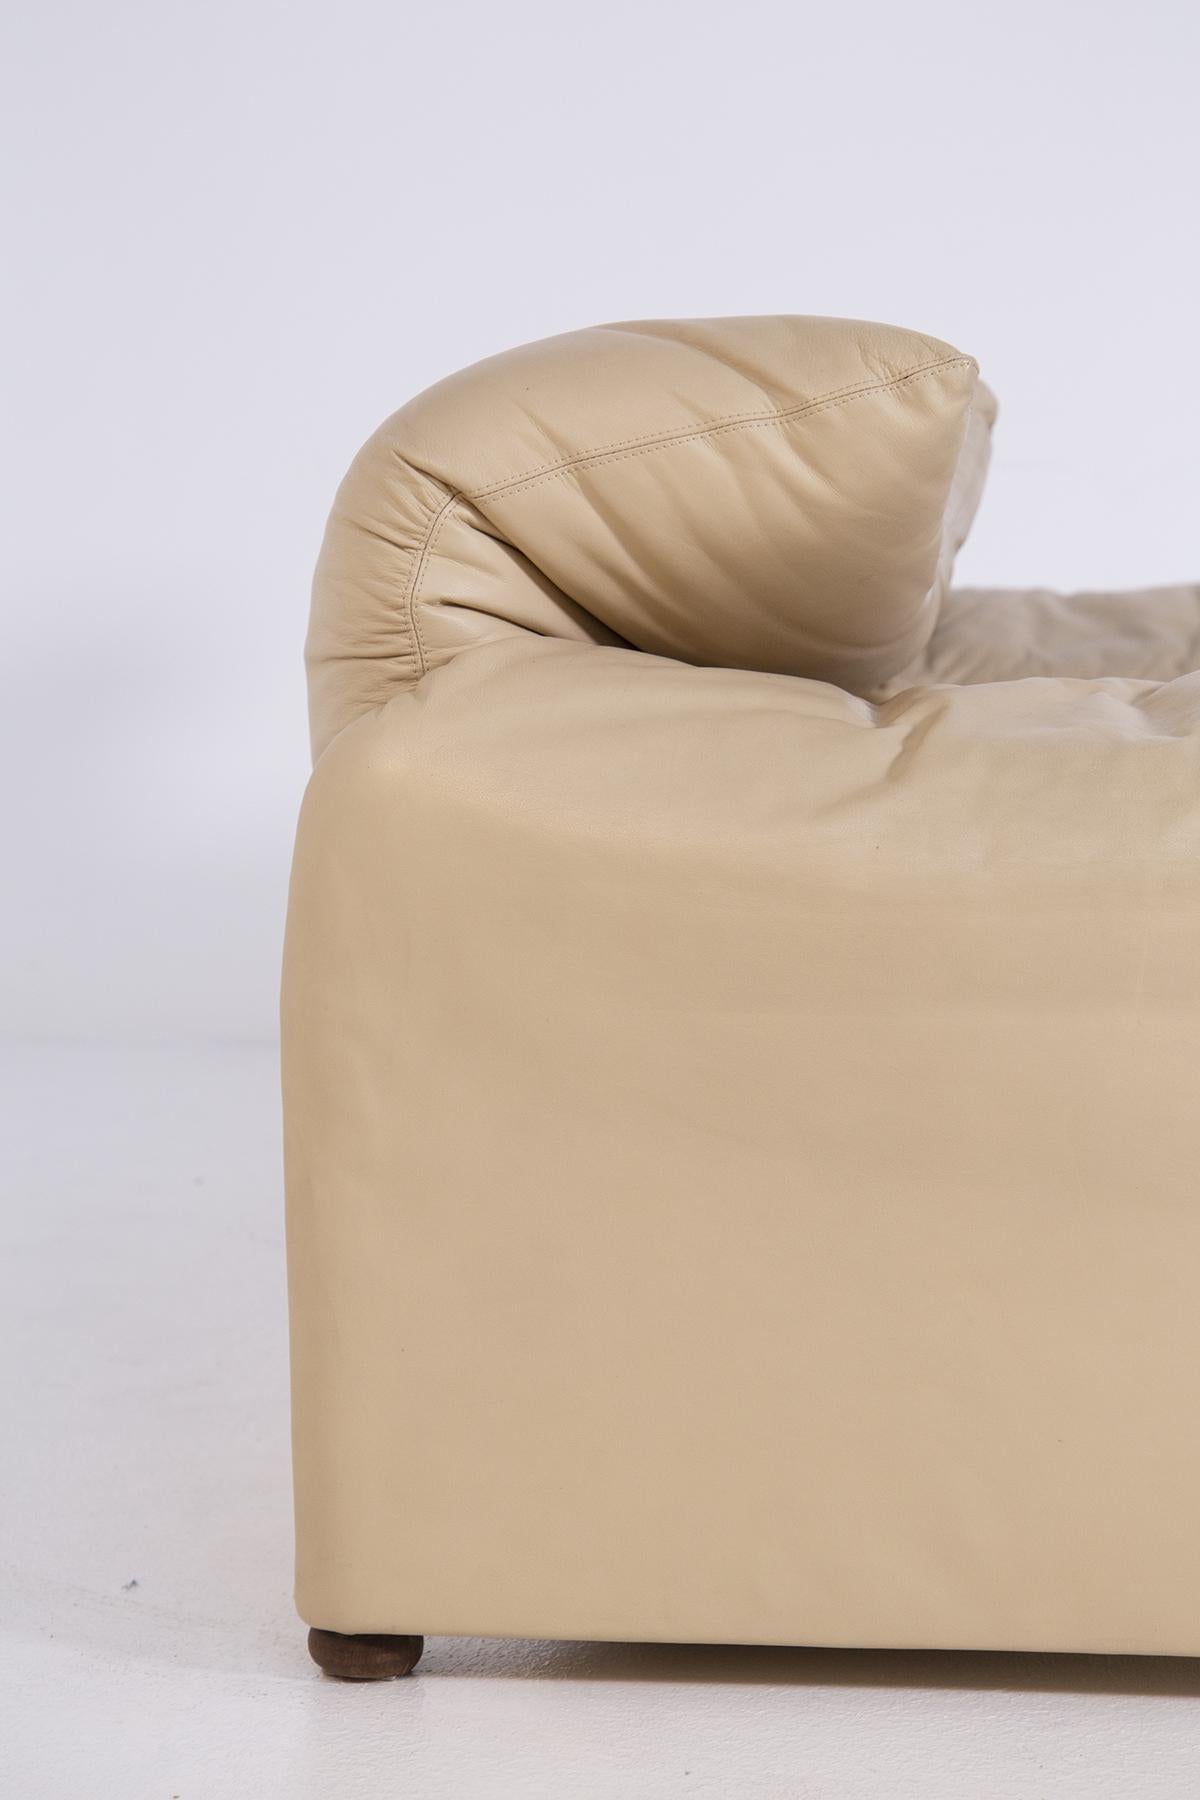 Vico Magistretti Italian Sofa in Leather for Cassina, First Edition 5